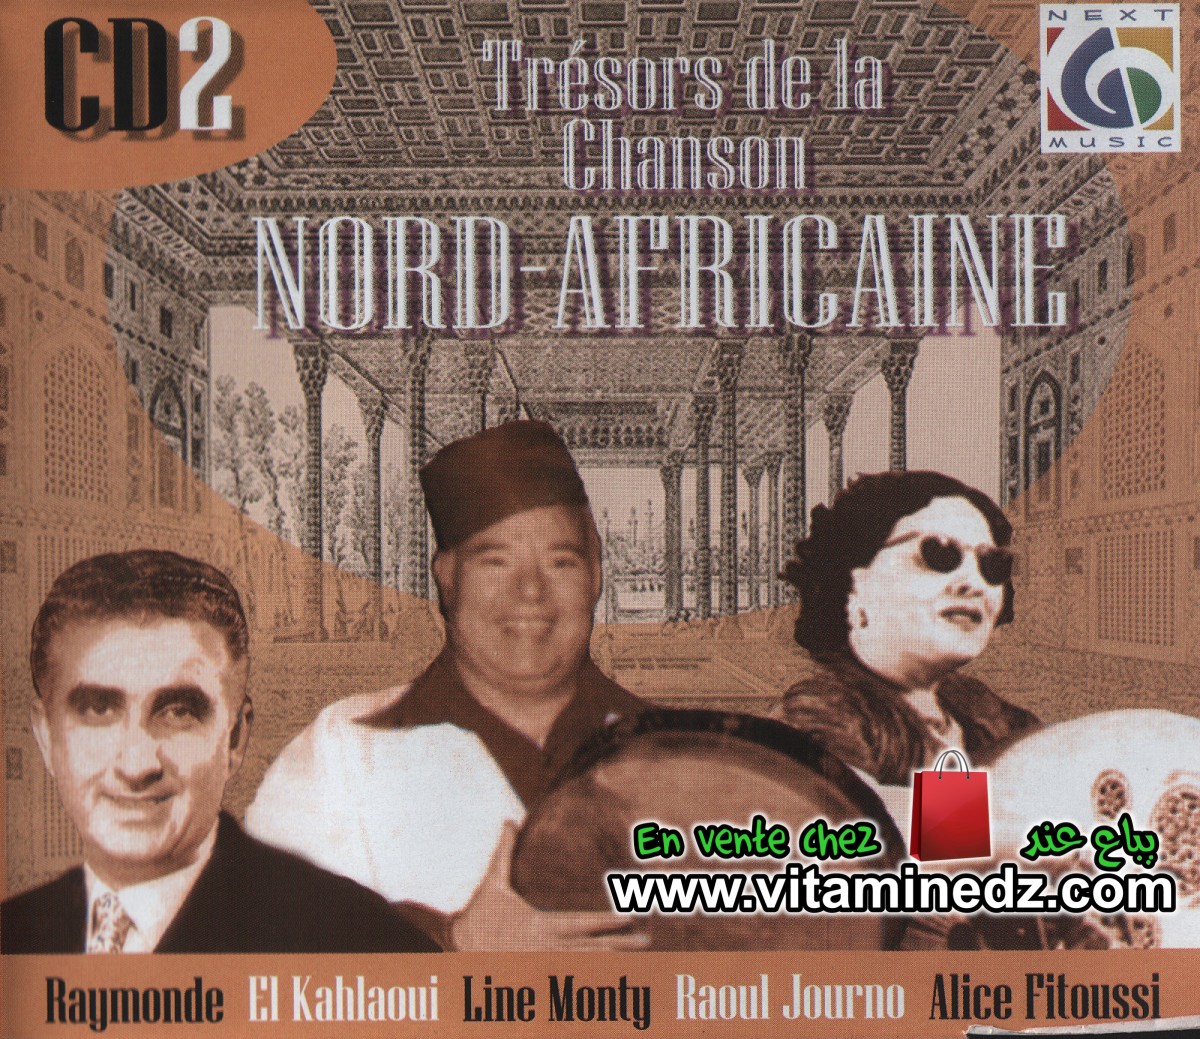 Trésors de la chanson Nord-Africaine - CD02